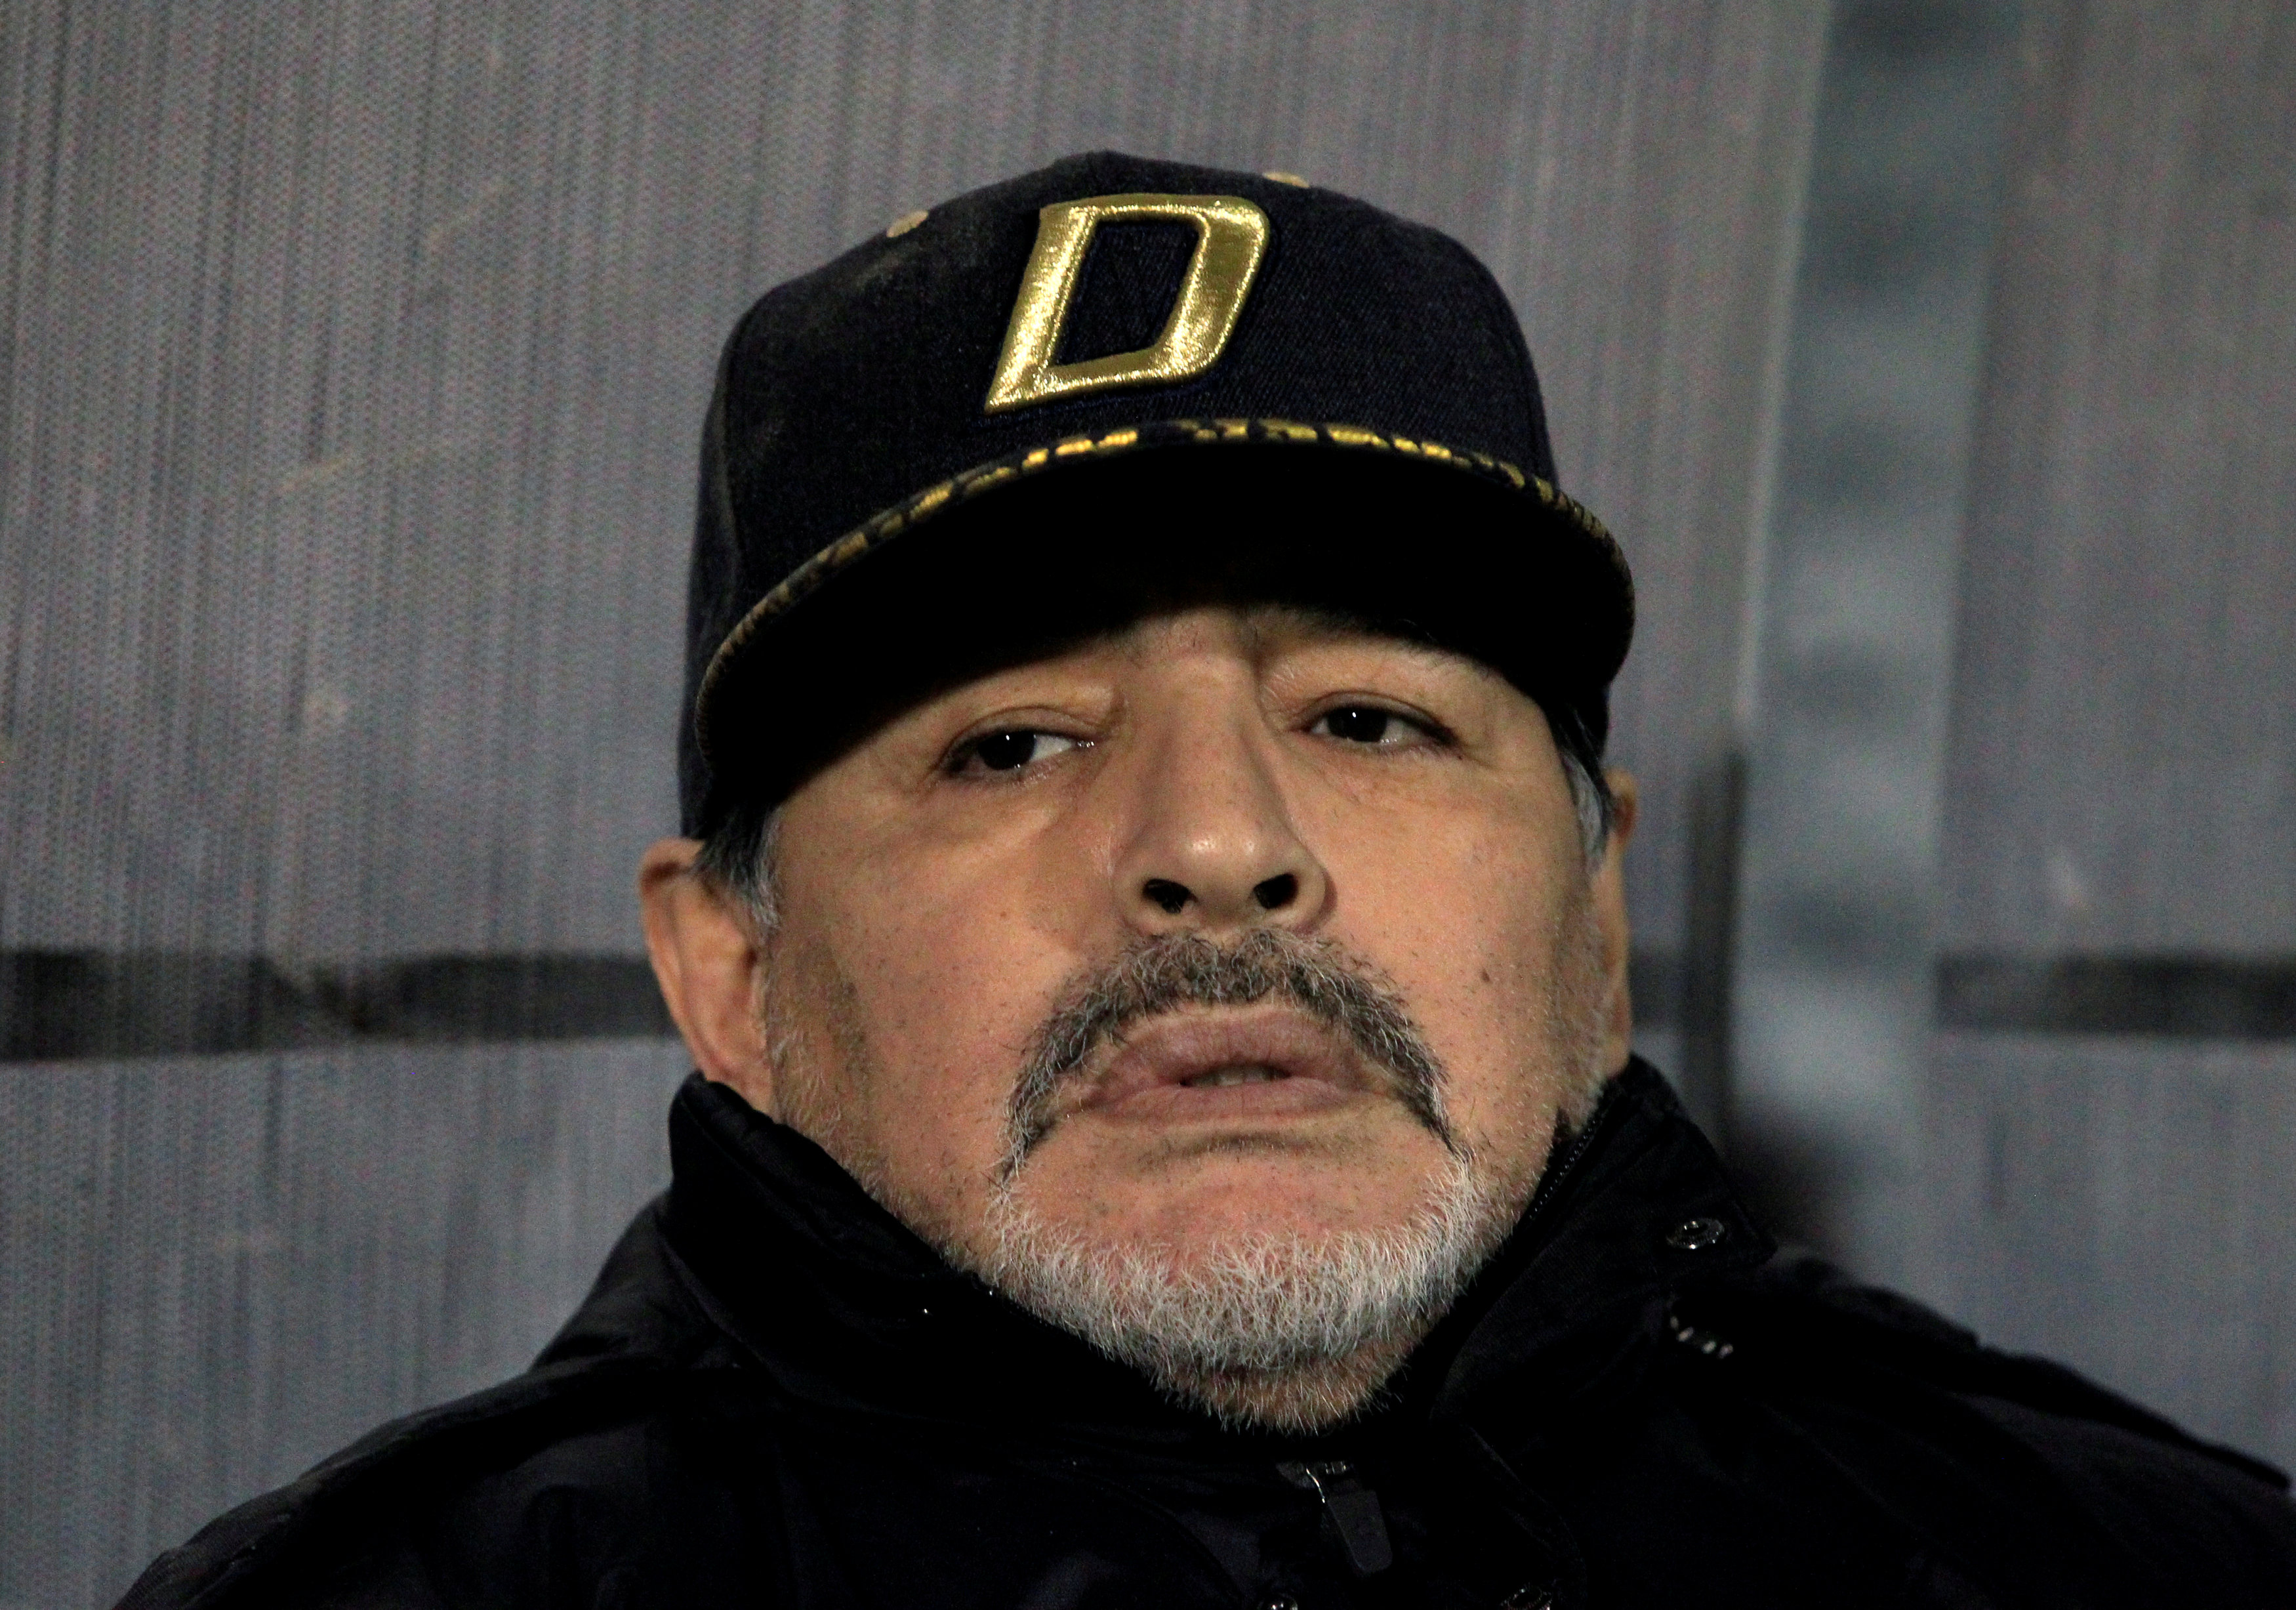 ¡Sí Luis! El abogado de Maradona dice que “se murió solo y abandonado”